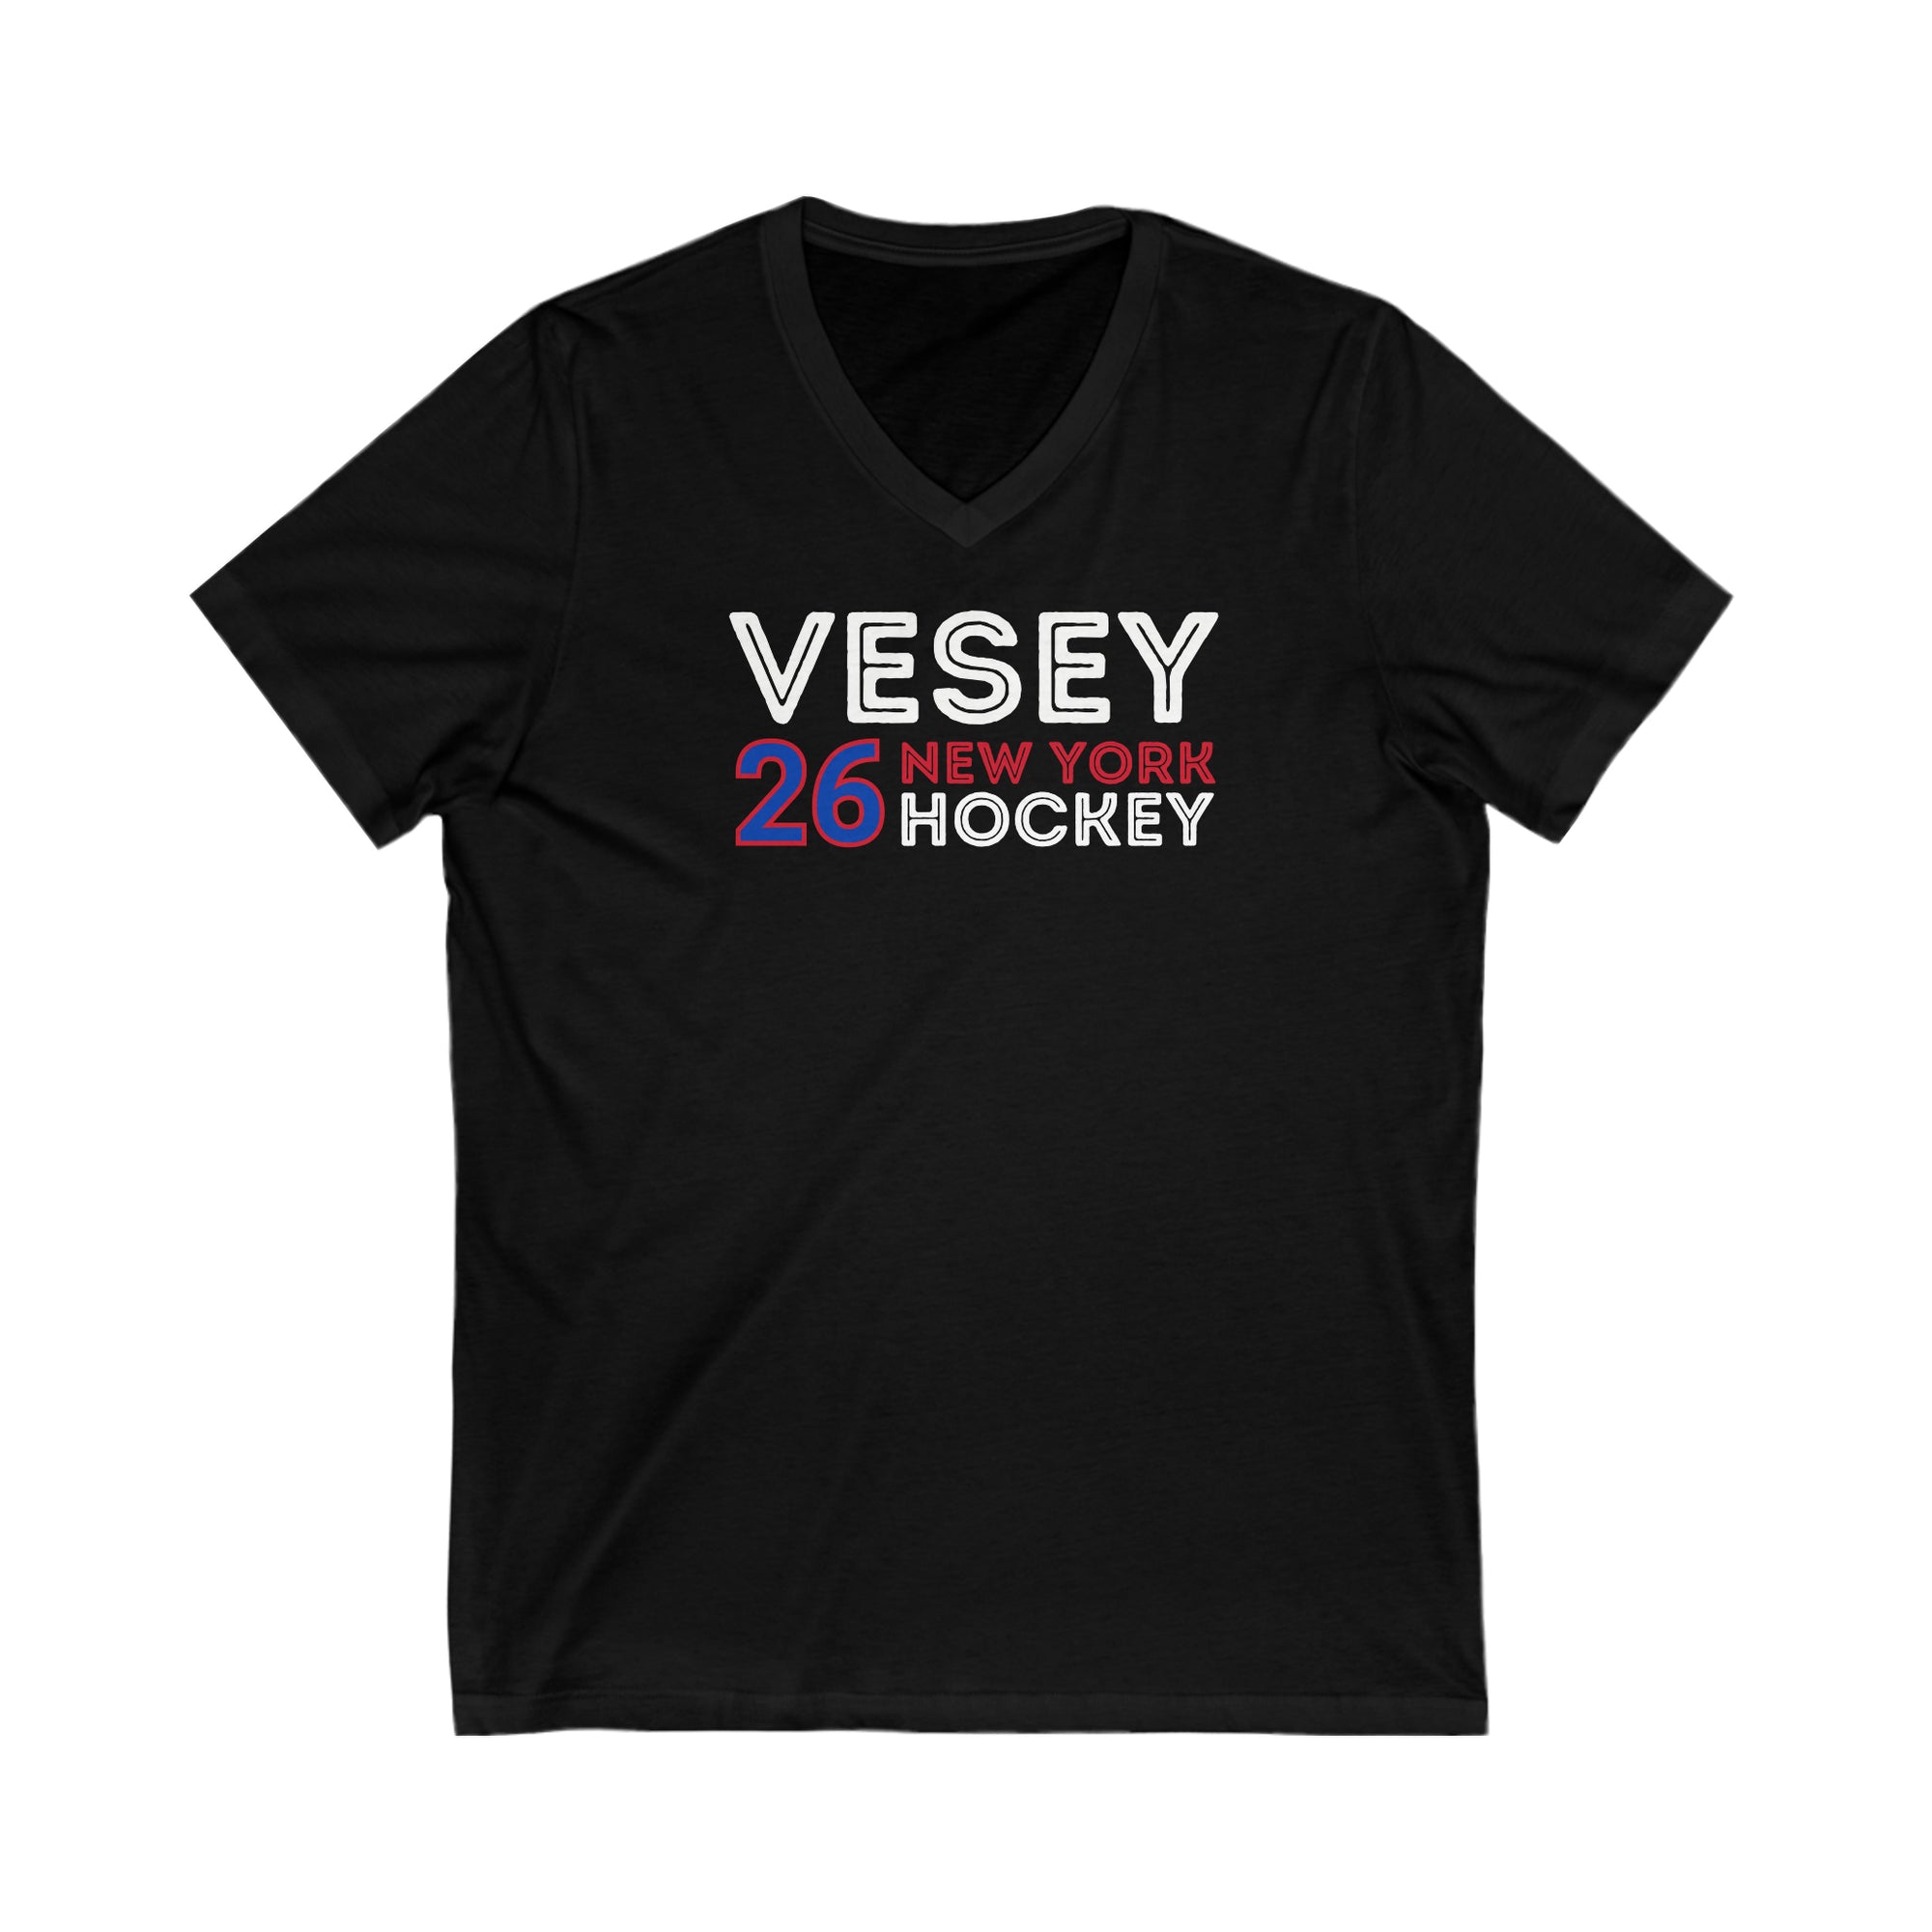 Vesey 26 New York Hockey Grafitti Wall Design Unisex V-Neck Tee